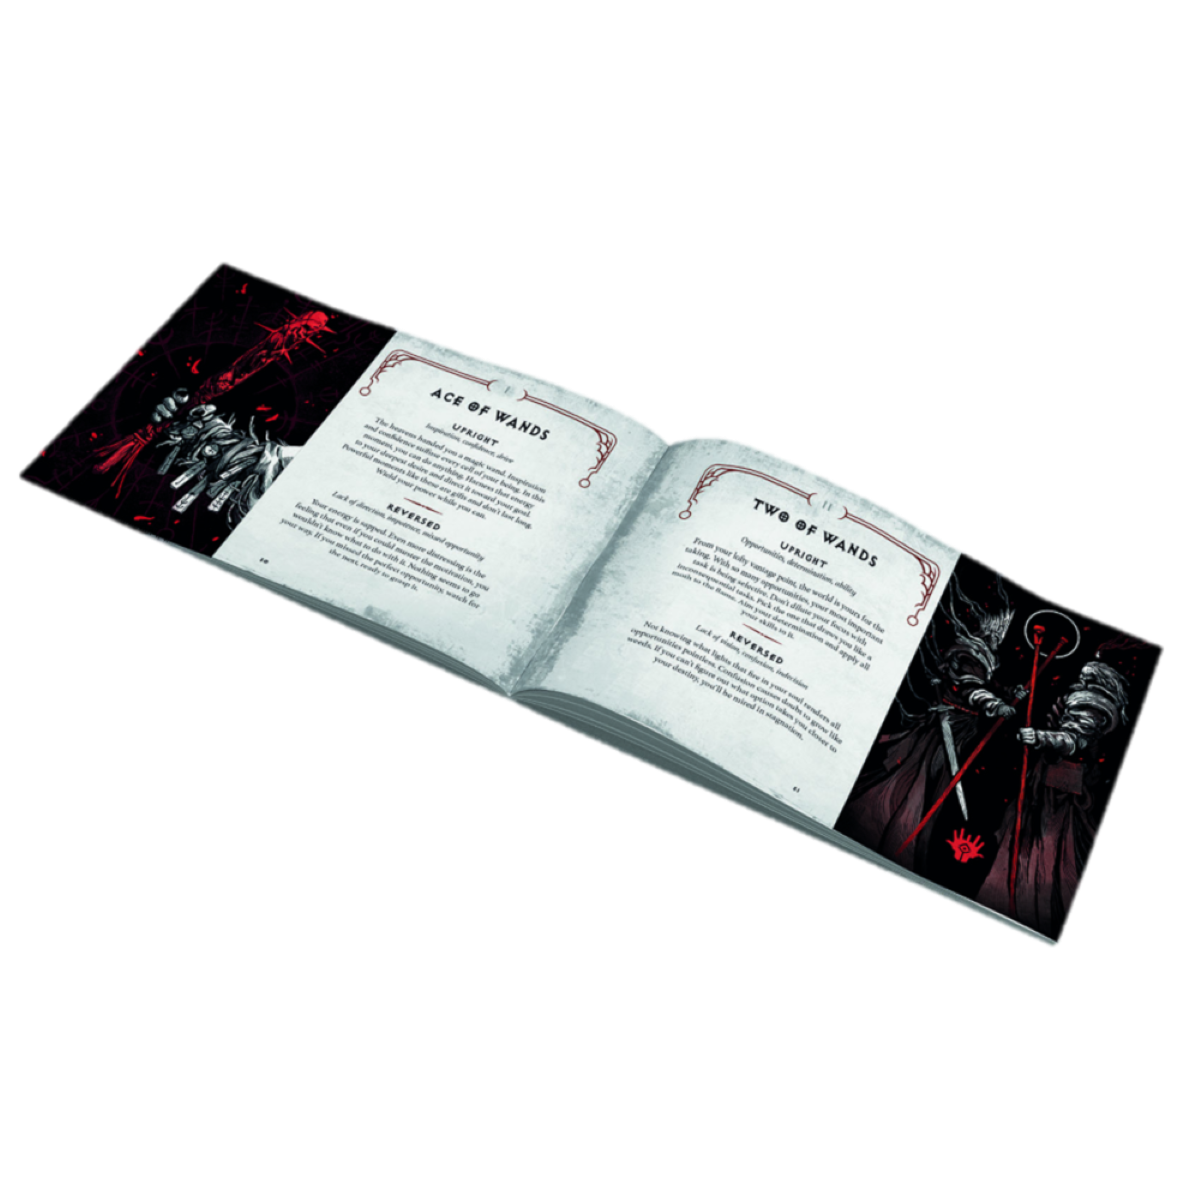 The Tarotdeck Sanctuary und DIABLO Reiseführer Blizzard Deck Handbuch und Diablo: